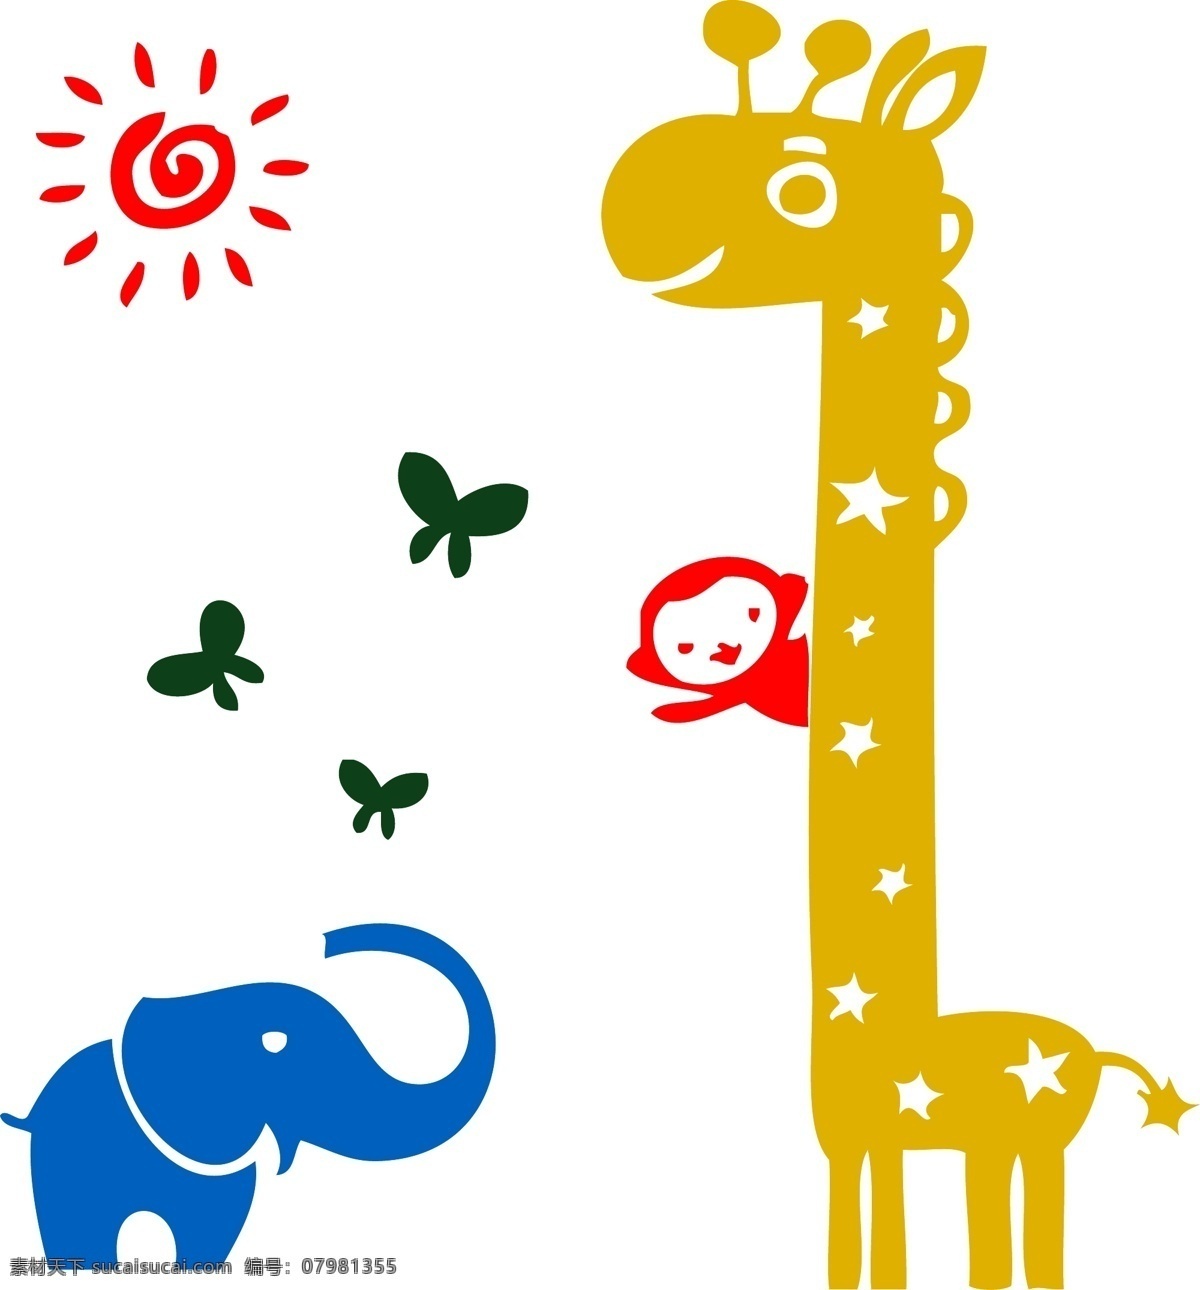 长颈鹿墙贴 卡通长颈鹿 长颈鹿 黄色 漫画长颈鹿 卡通动物 可爱长颈鹿 亚克力墙贴 装饰 儿童房 照片 墙贴 文化艺术